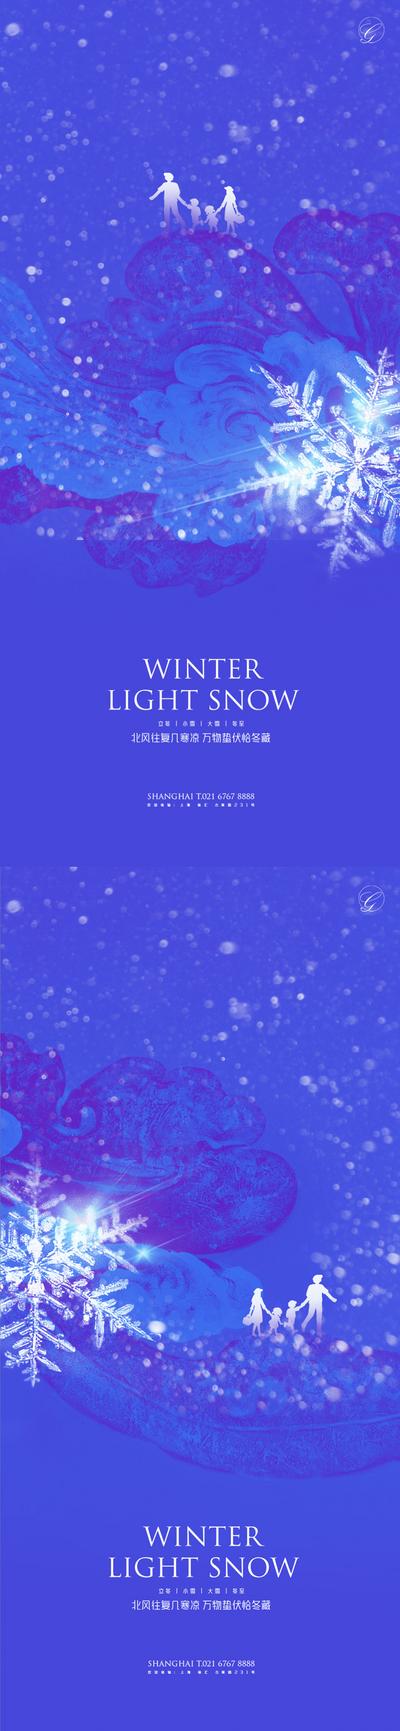 【南门网】海报 二十四节气 系列 立冬 小雪 大雪 冬至 